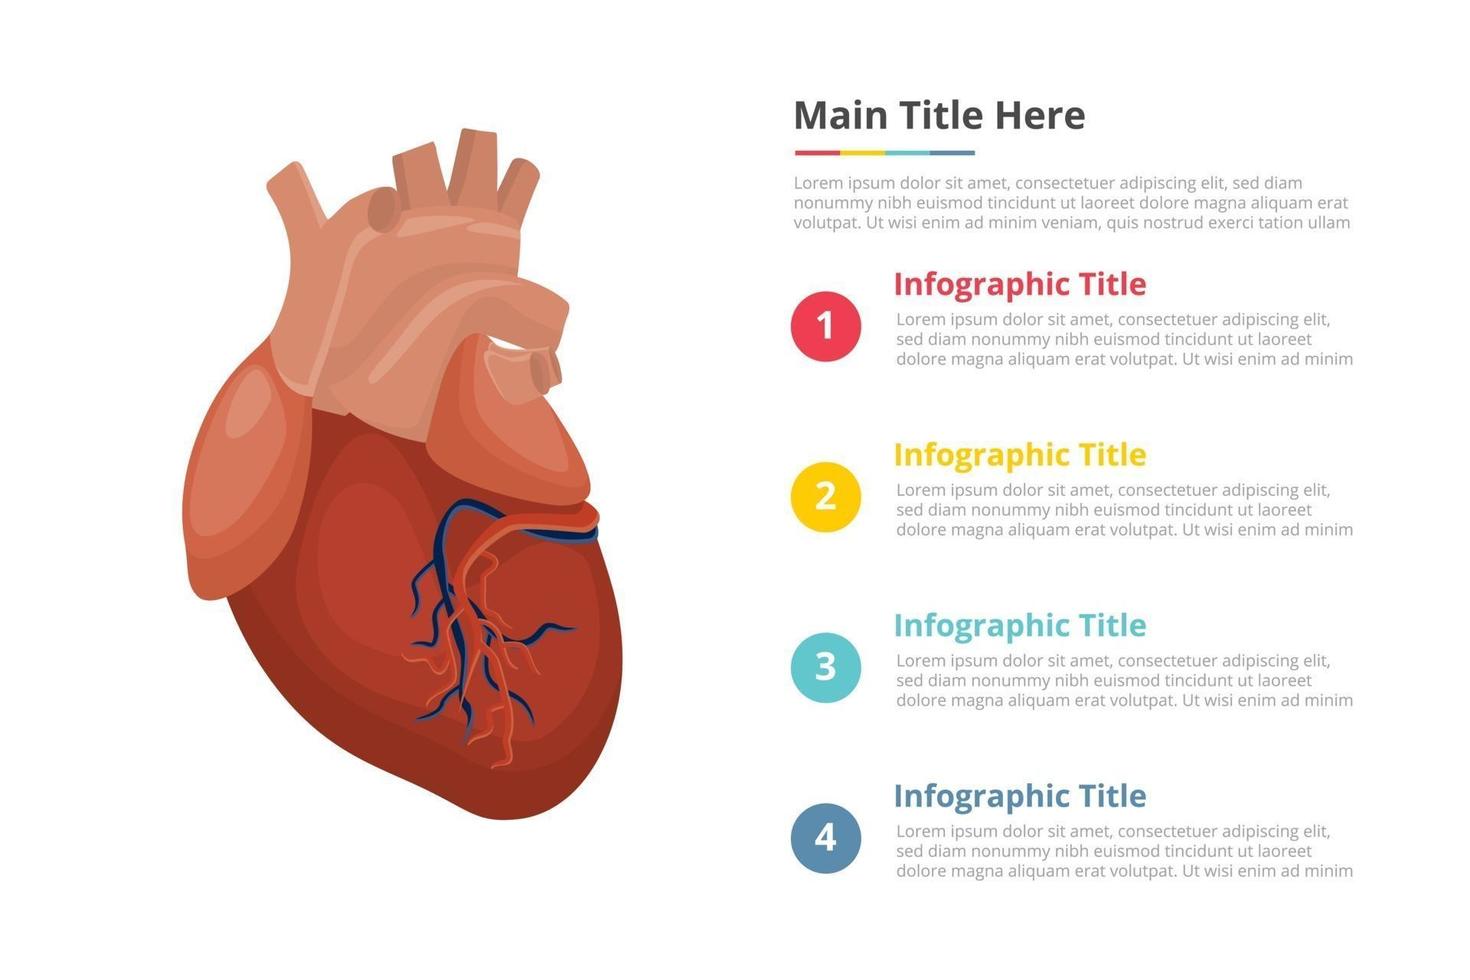 plantilla de infografía de corazón humano con 4 puntos de descripción de texto de espacio libre - ilustración vectorial vector